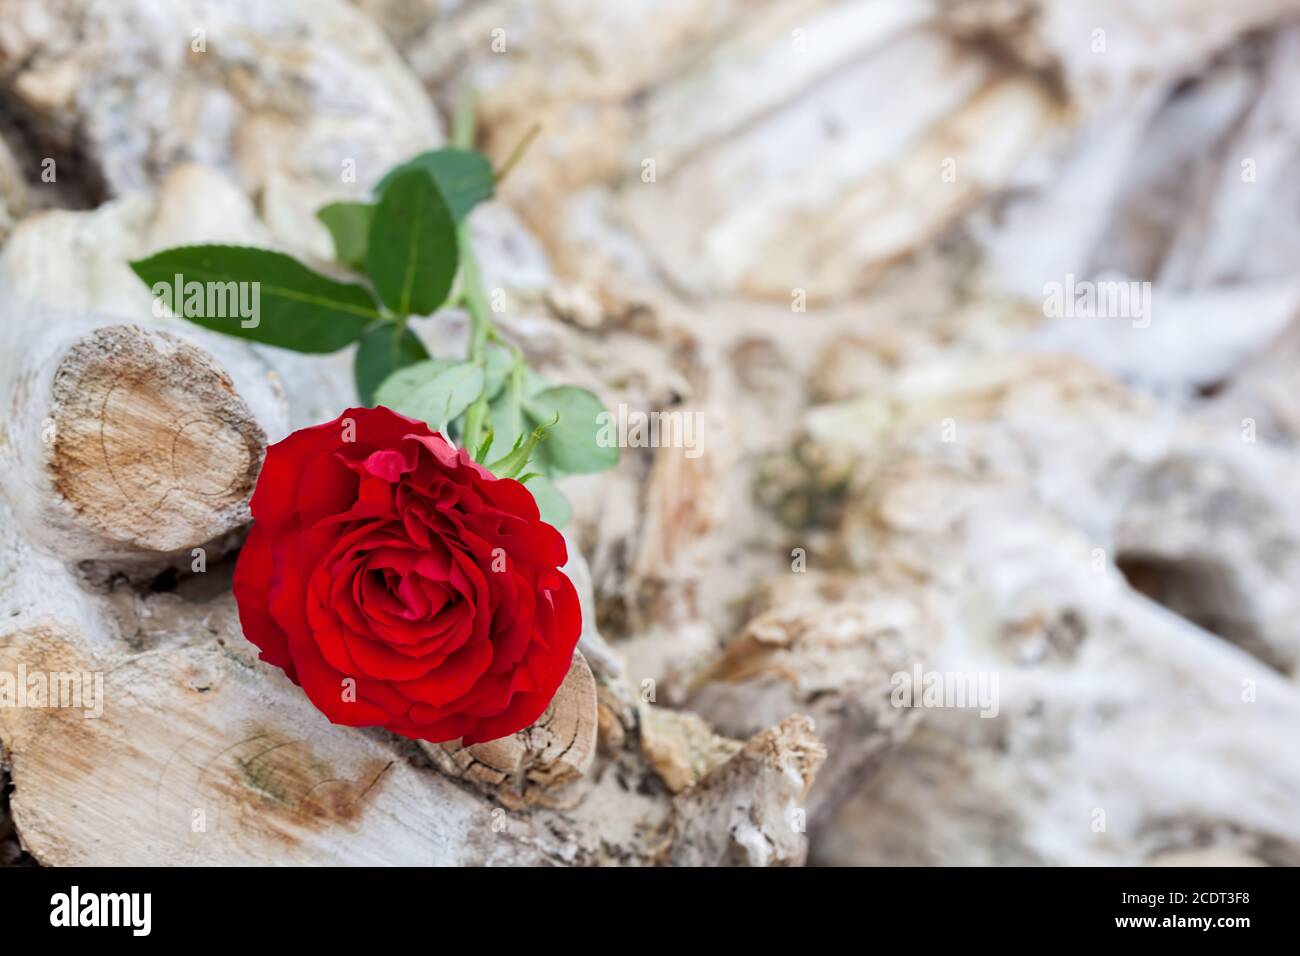 Rose rouge sur la plage. Amour, romance, mélancolie concepts. Banque D'Images